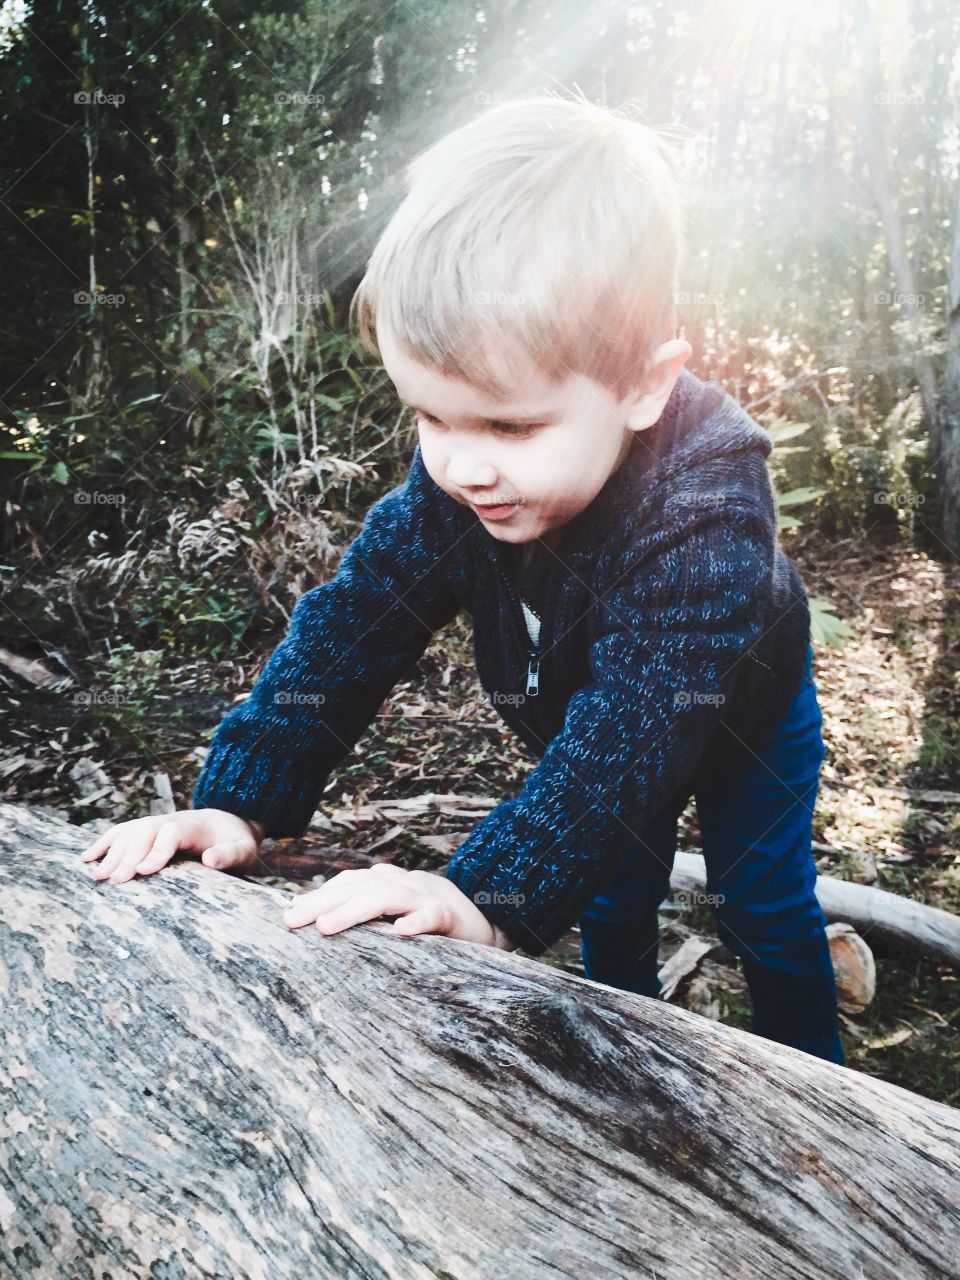 Boy standing near tree trunk